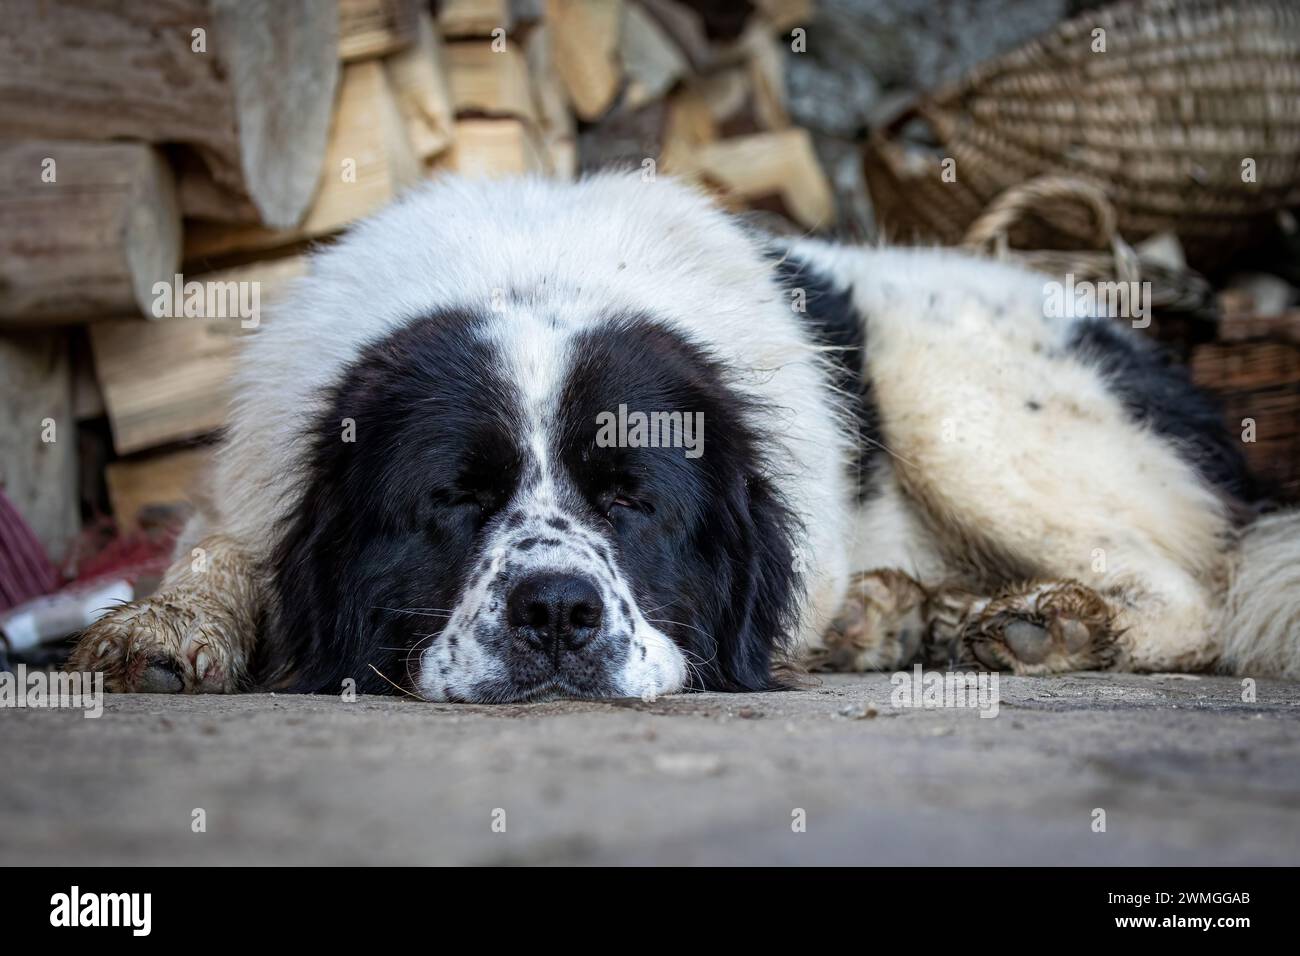 A Bukowina Shepherd  dog Stock Photo